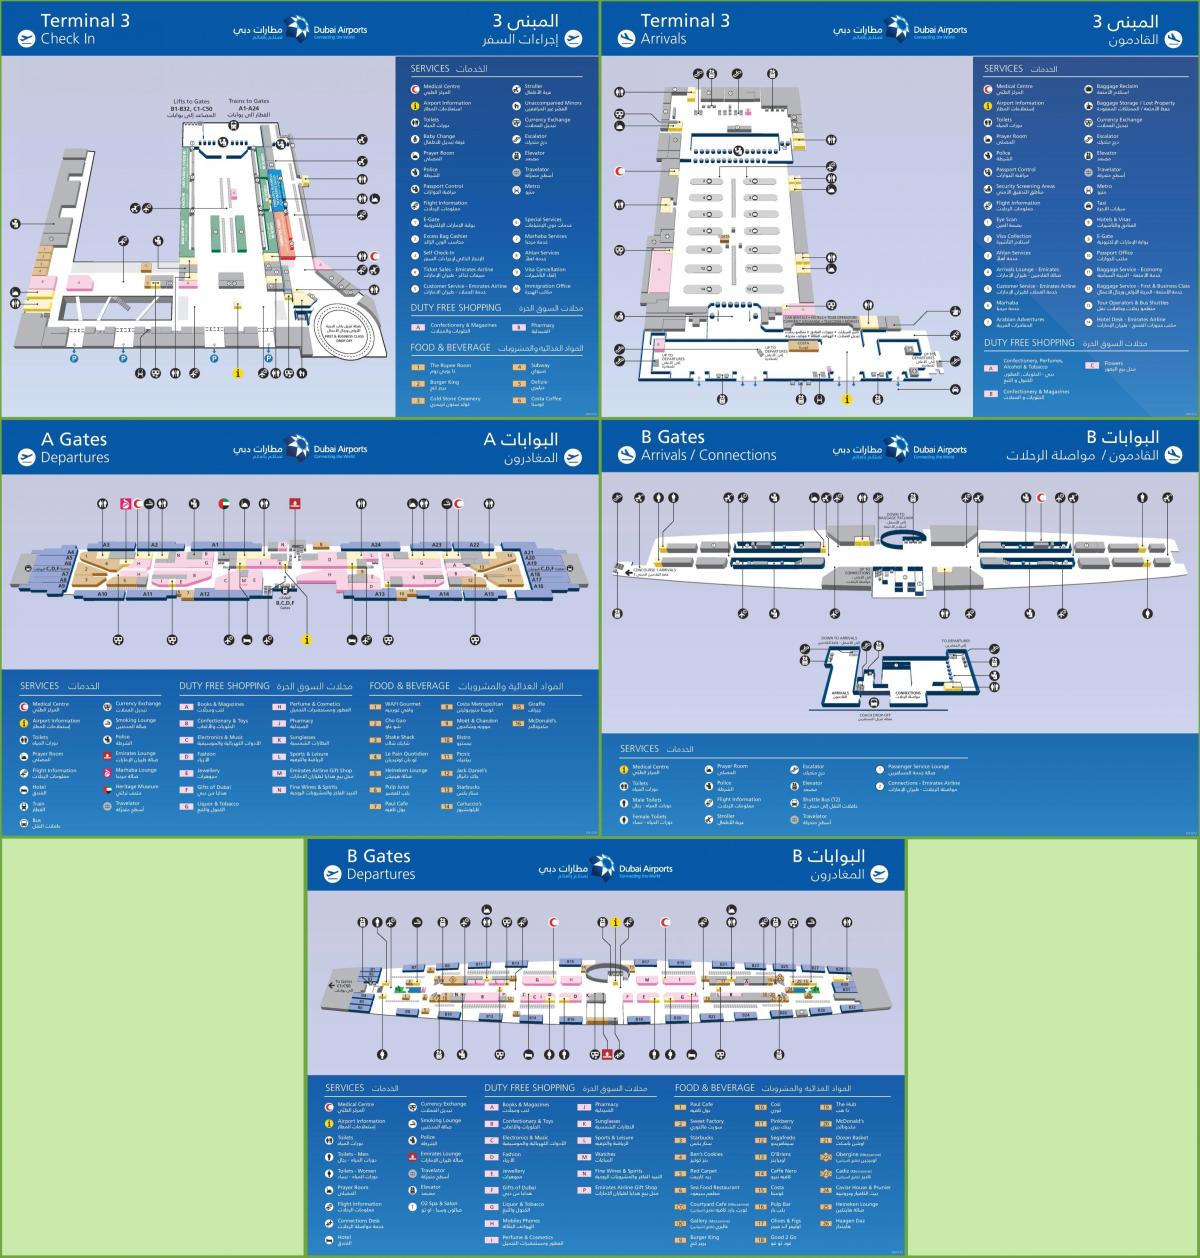 दुबई अंतर्राष्ट्रीय हवाई अड्डे के टर्मिनल 3 के नक्शे